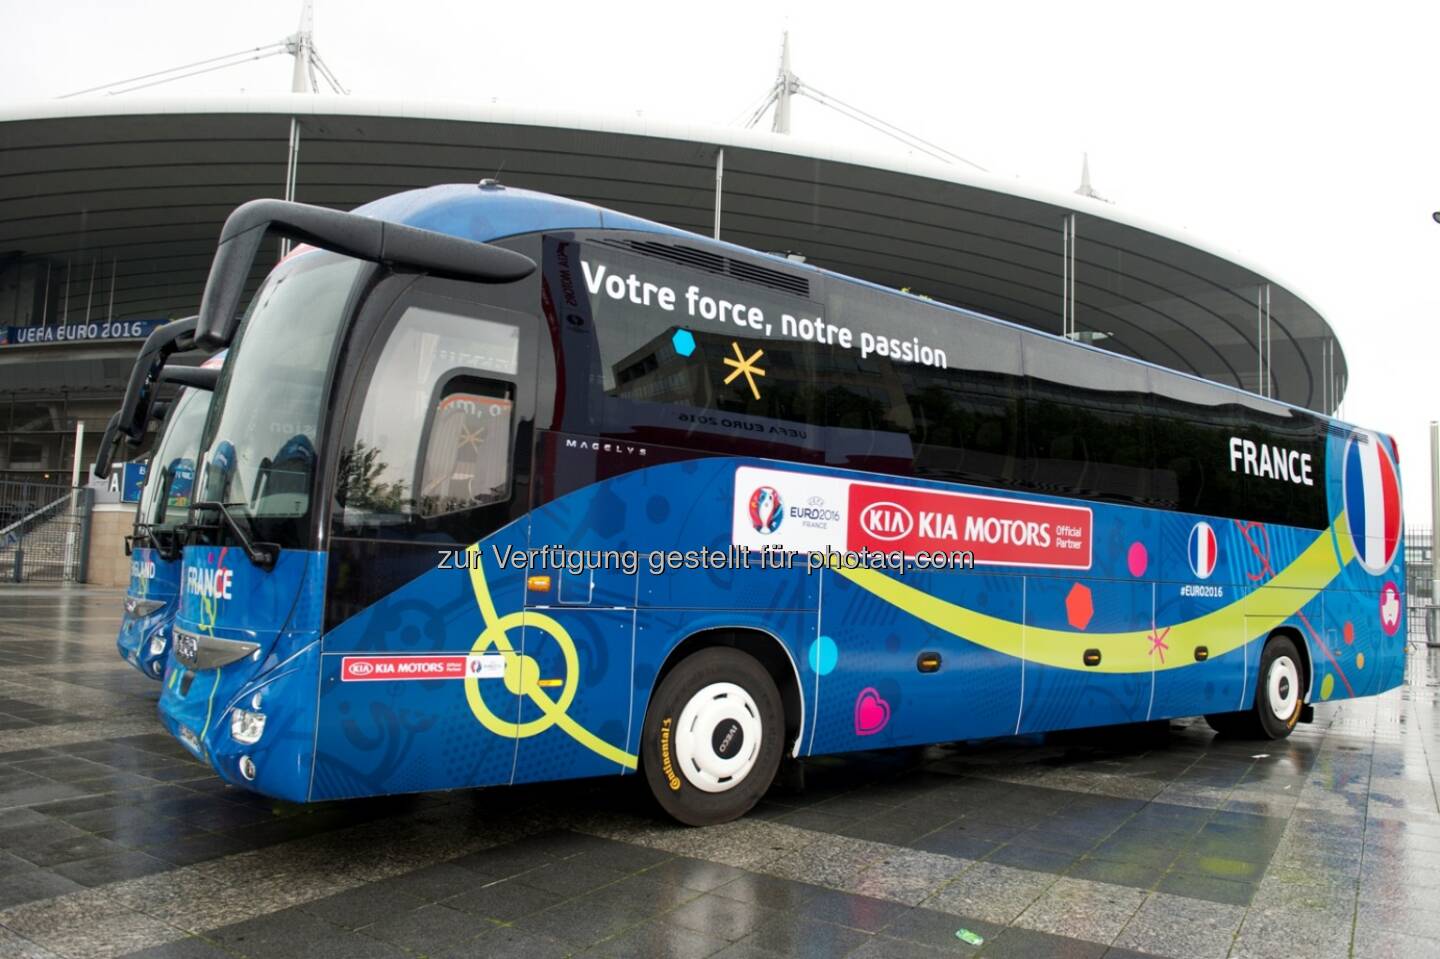 Bus der französischen Nationalmannschaft : Die Team-Busse bei der UEFA Euro 2016™ rollen auf Premium-Busreifen von Continental durch Frankreich : Fotocredit: Continental